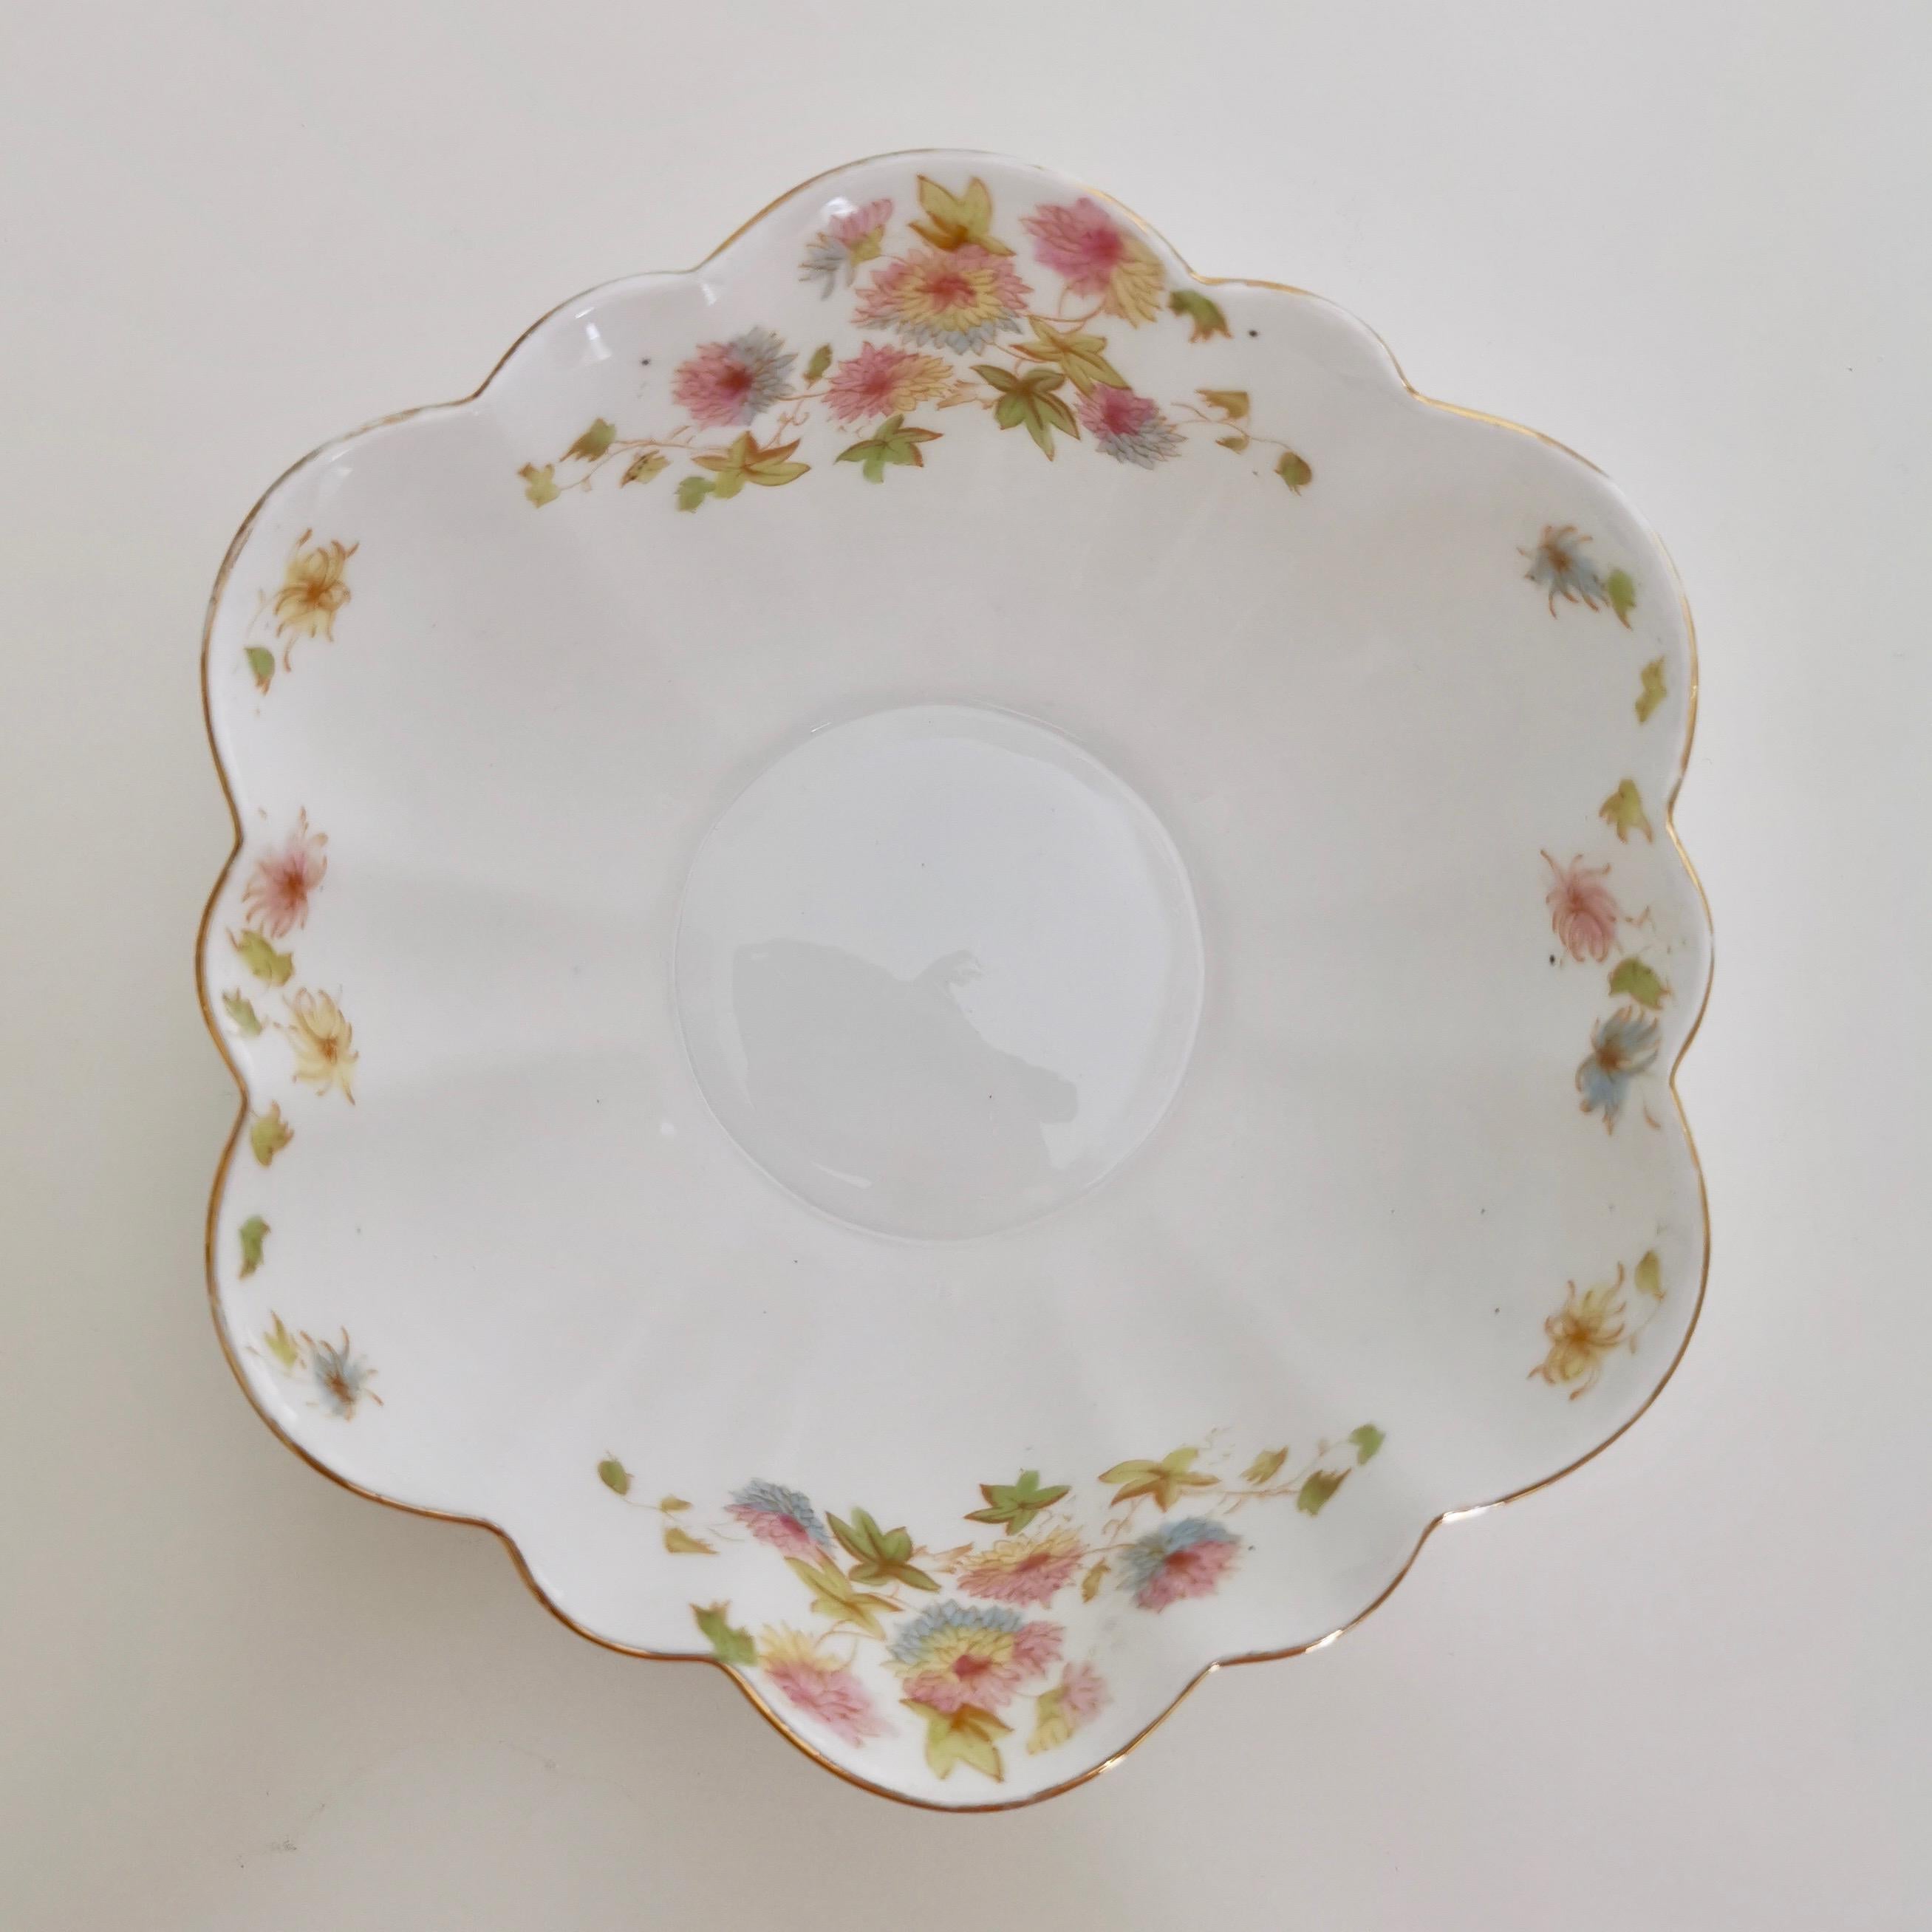 Wileman Porcelain Tea Set, Chrysanthemum, Pastel Colors, Art Nouveau, 1896 3